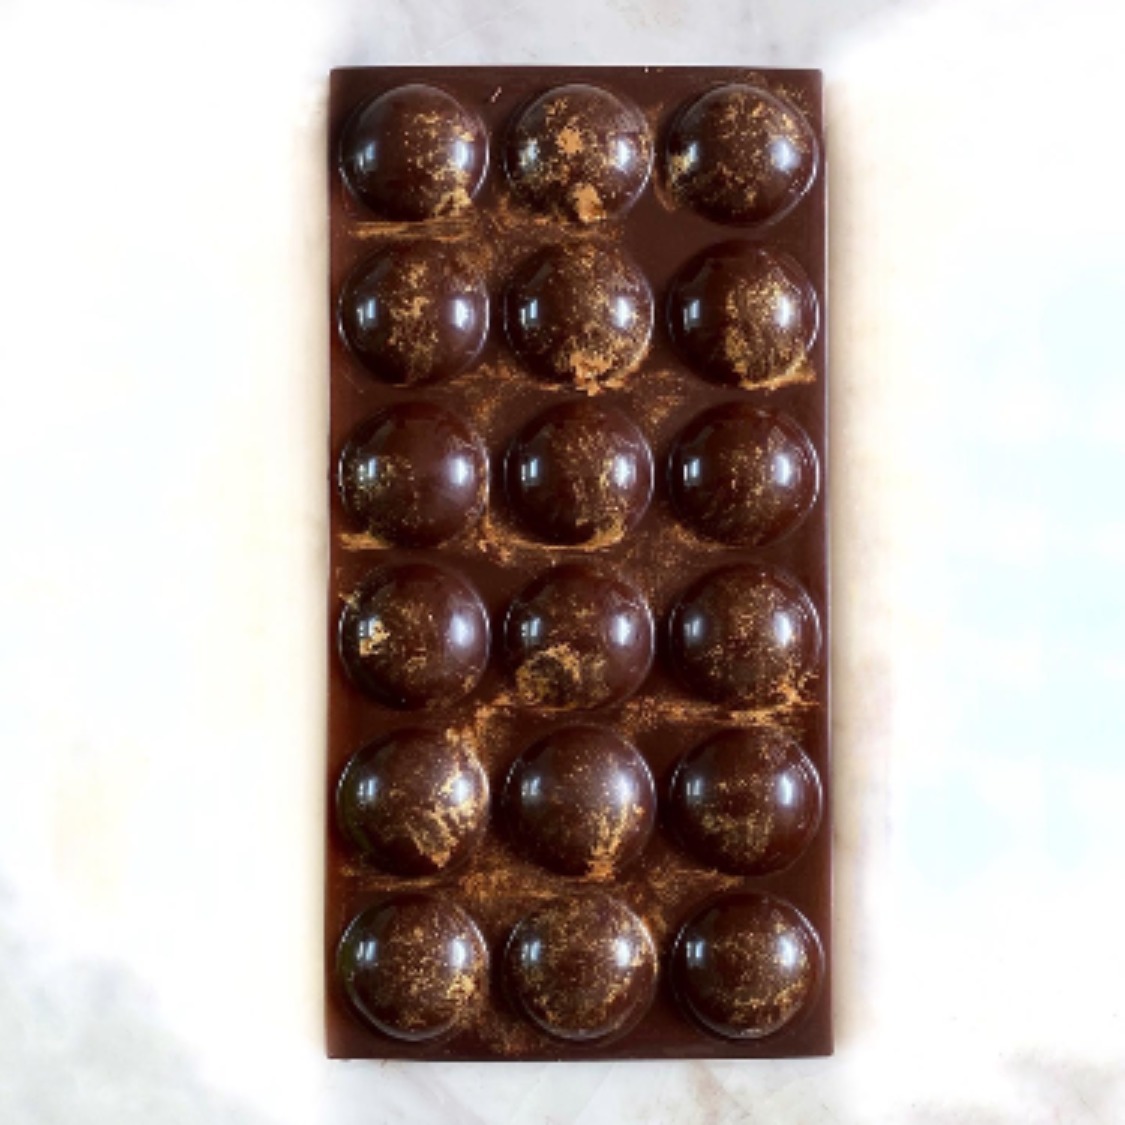 Hazelnut Chocolate bar